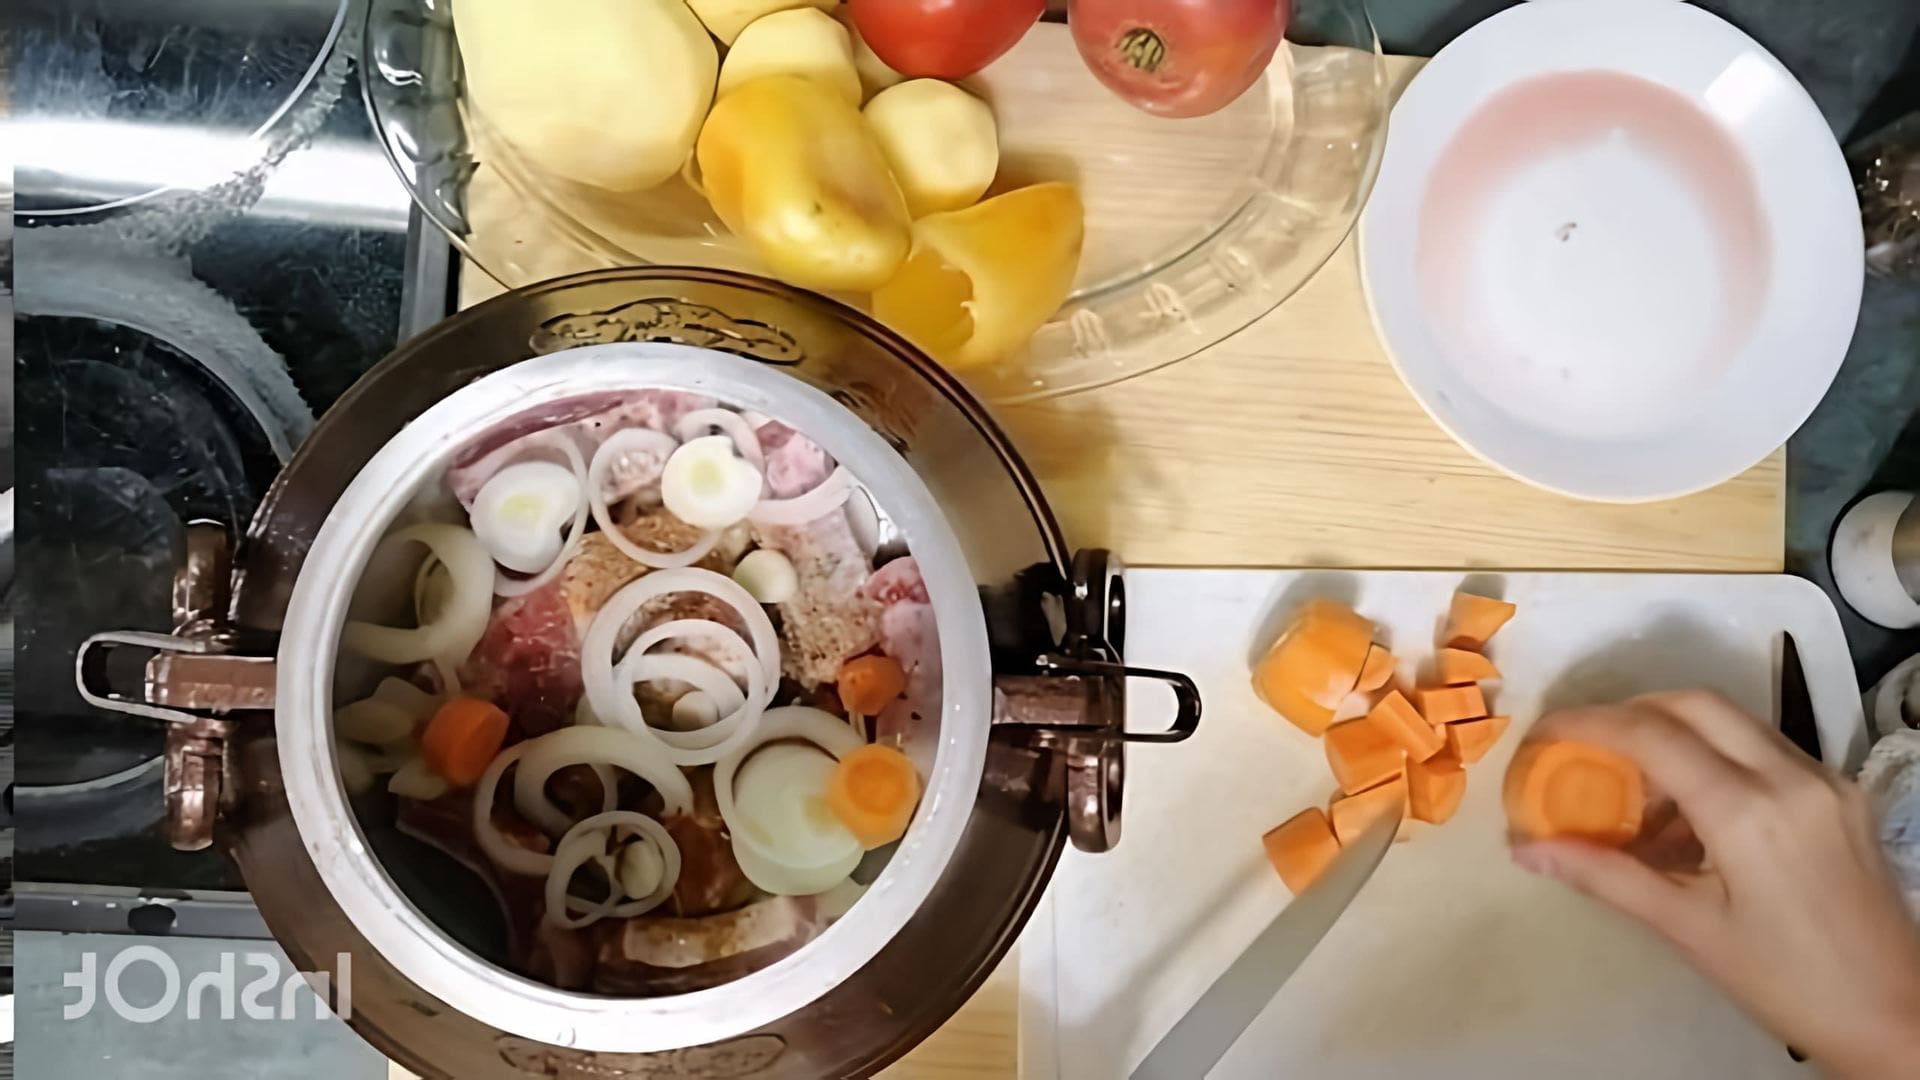 В этом видео-ролике демонстрируется процесс приготовления вкусного и простого блюда - свиных ребер с картошкой в афганском казане